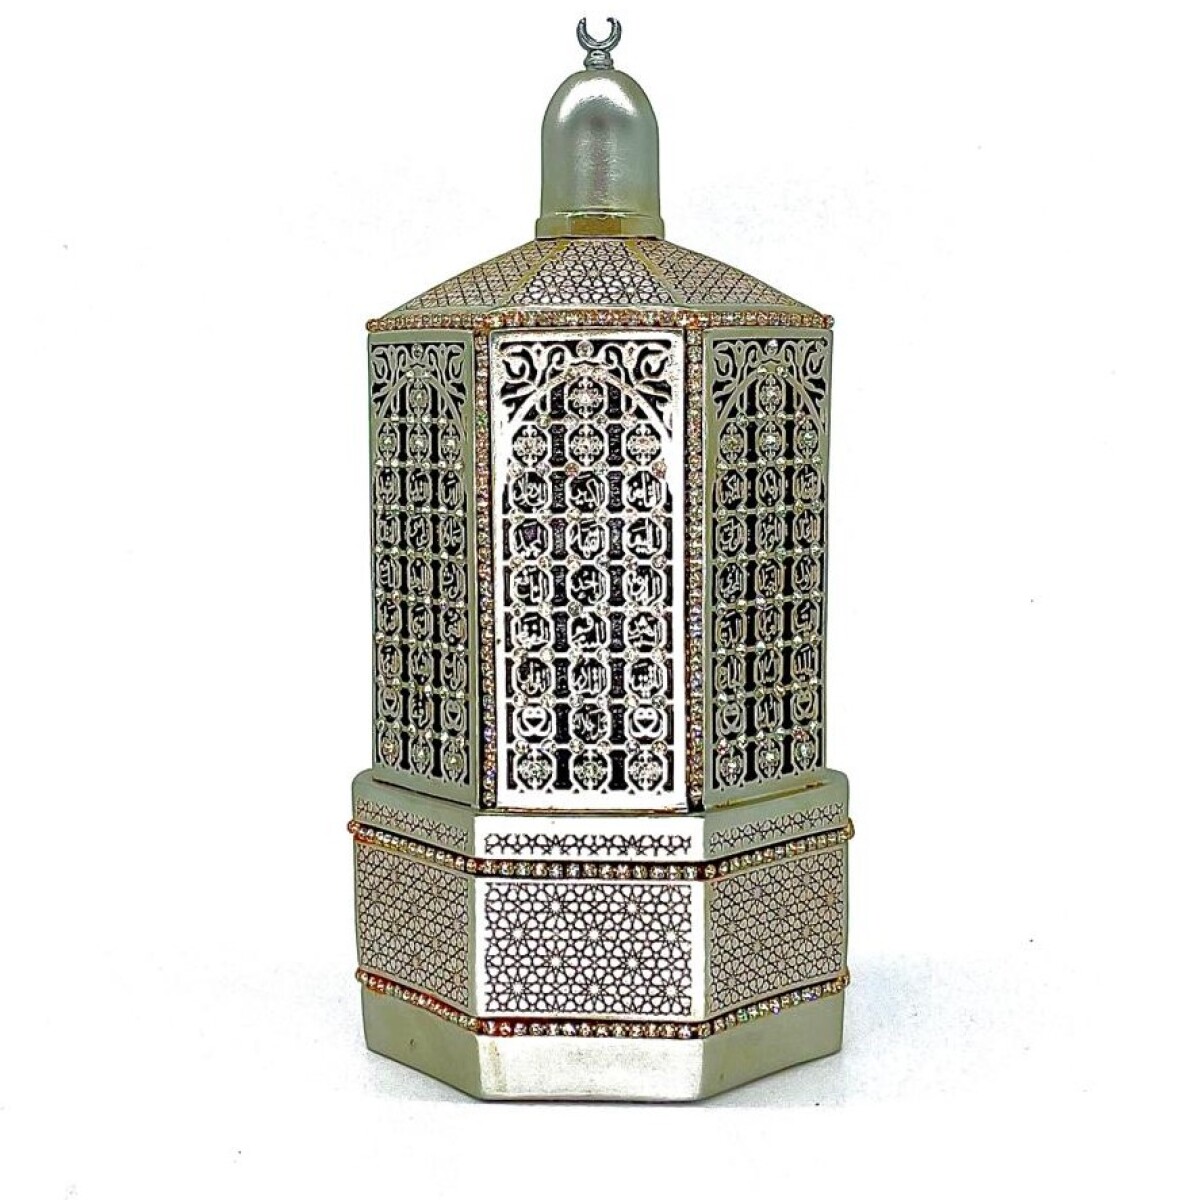 Replica mezquita sultan 